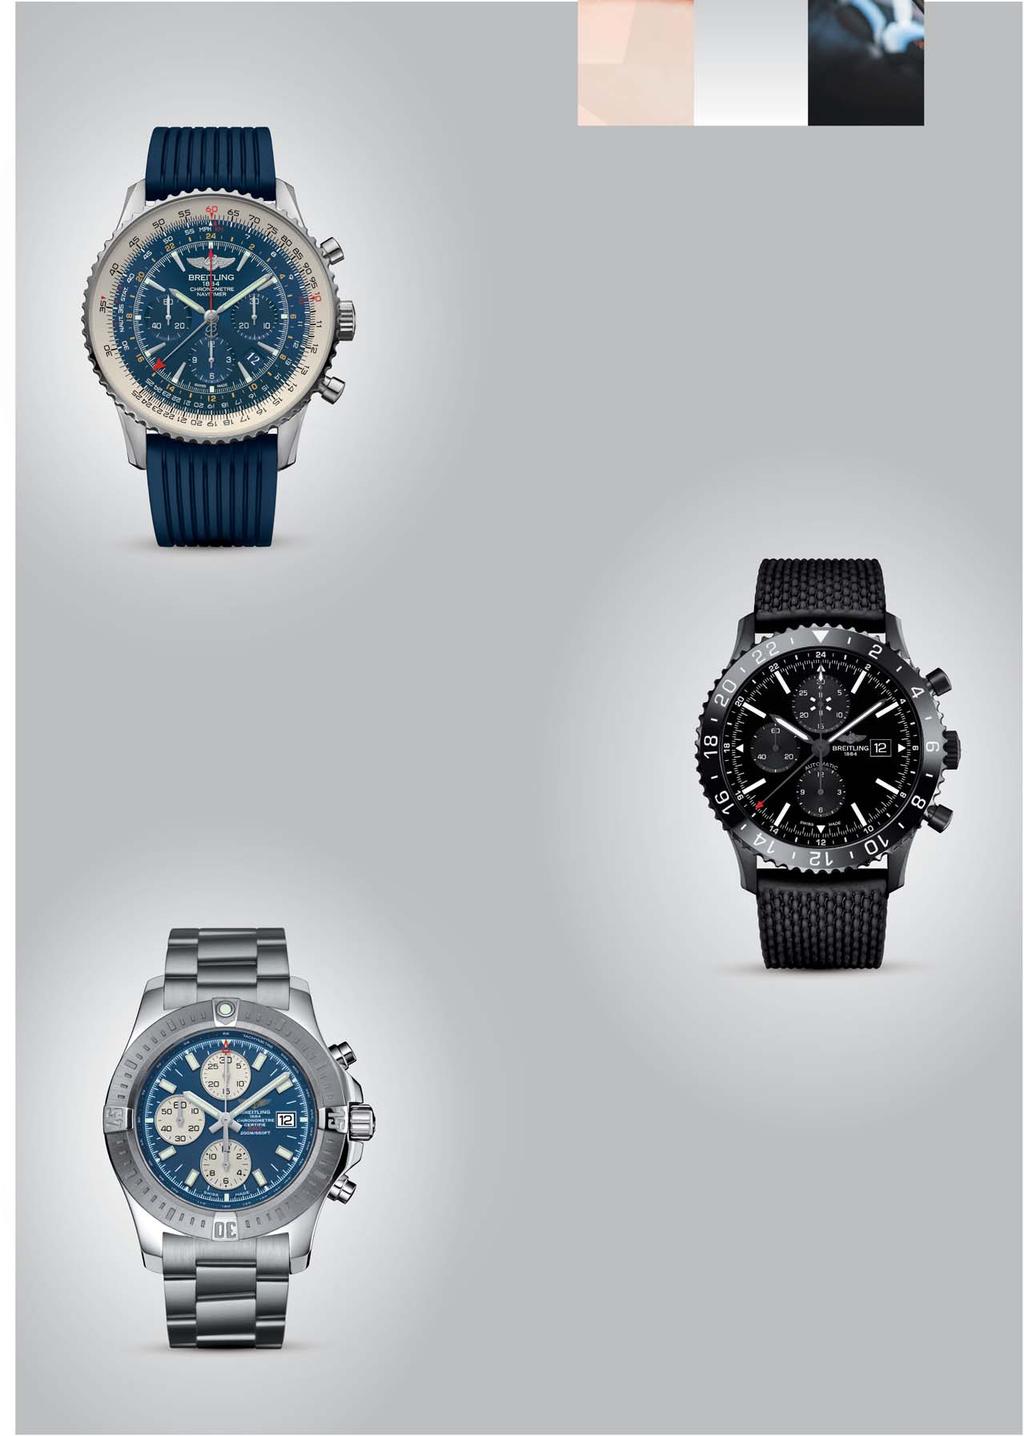 KRÍŽIK BREITLING BREITLING NAVITIMER GMT AURORA BLUE Limitovaná 1000-kusová edícia hodiniek pre leteckých nadšencov Navitimer s funkciou GMT získala nové prevedenie vo farbe modrej polárnej žiary.